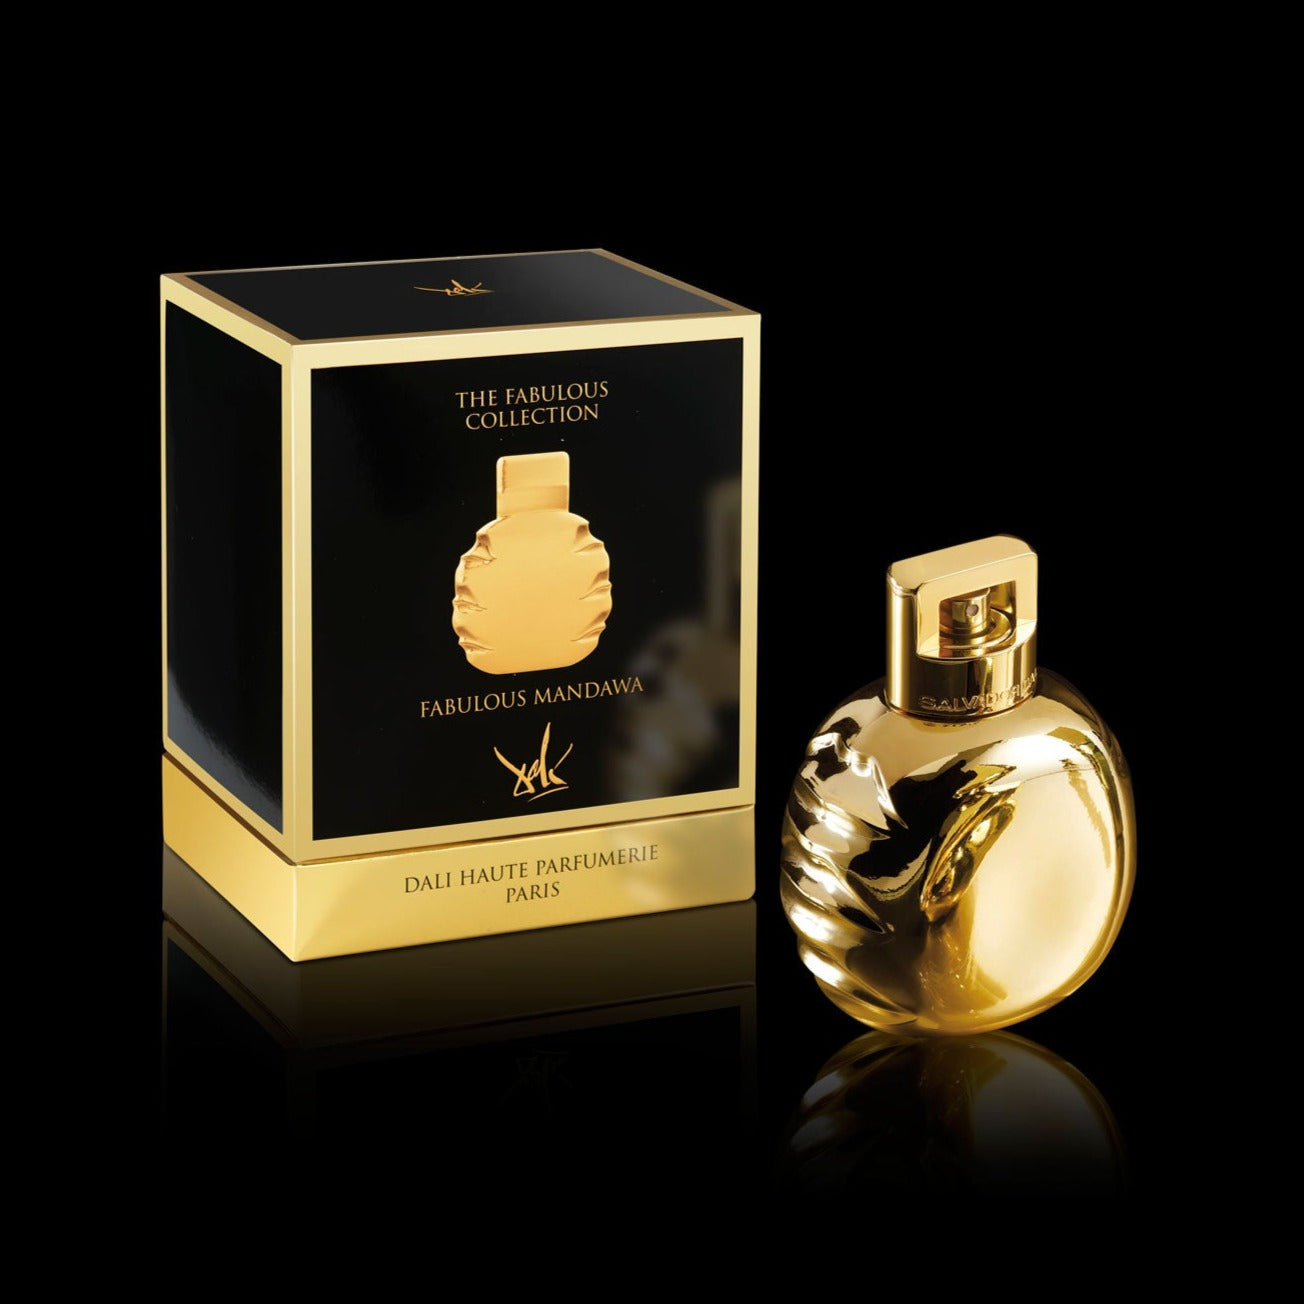 Mandawa 100ml Eau de Parfum Bottle and Box by Dalí Haute Parfumerie